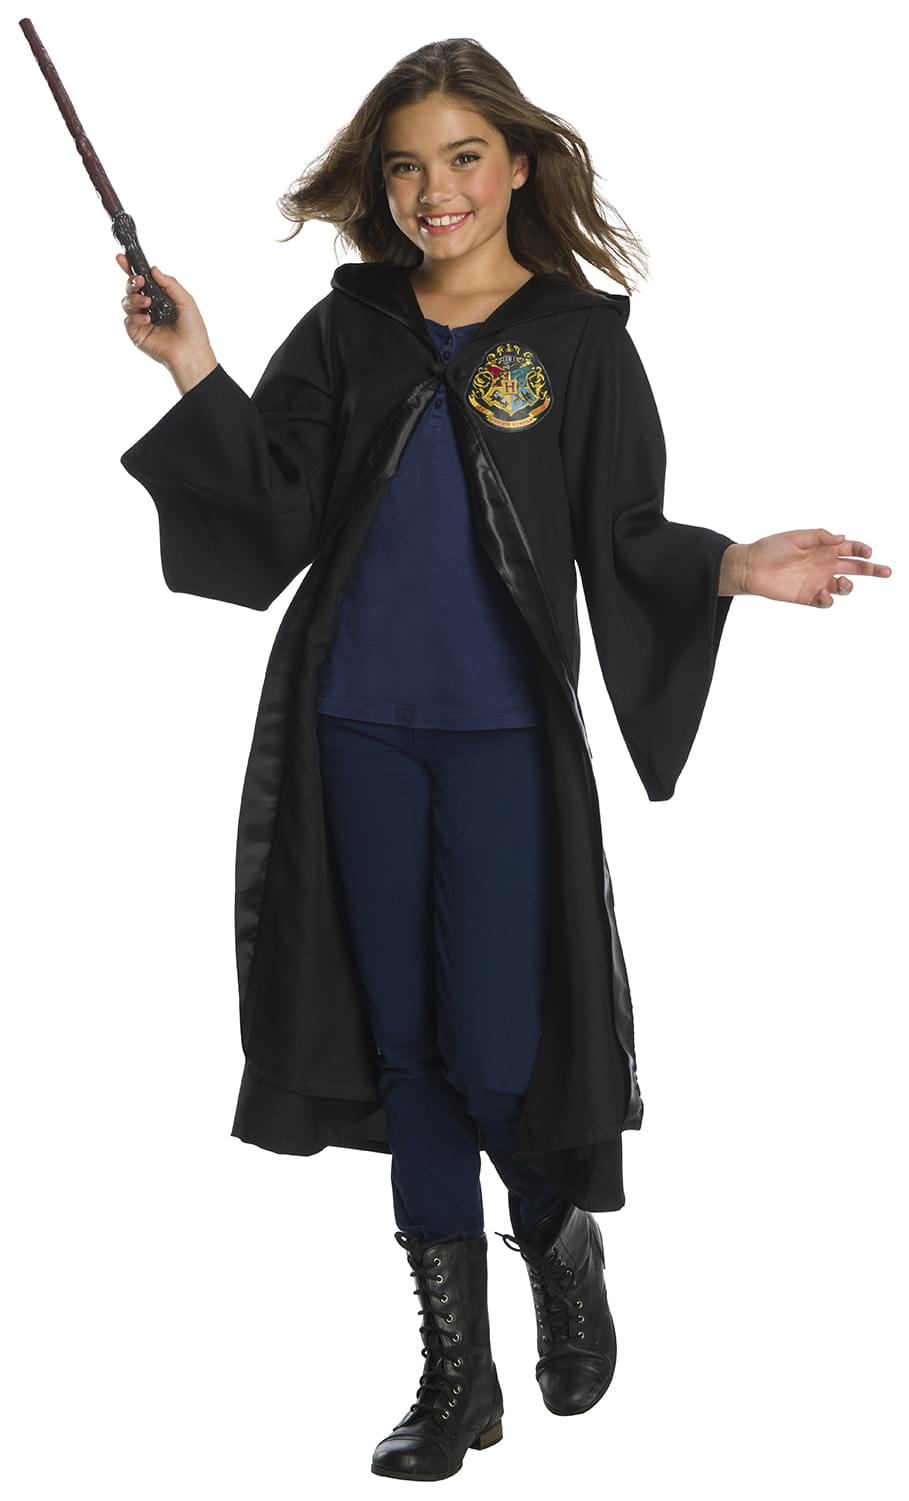 Harry Potter Hogwart's Child Costume Robe